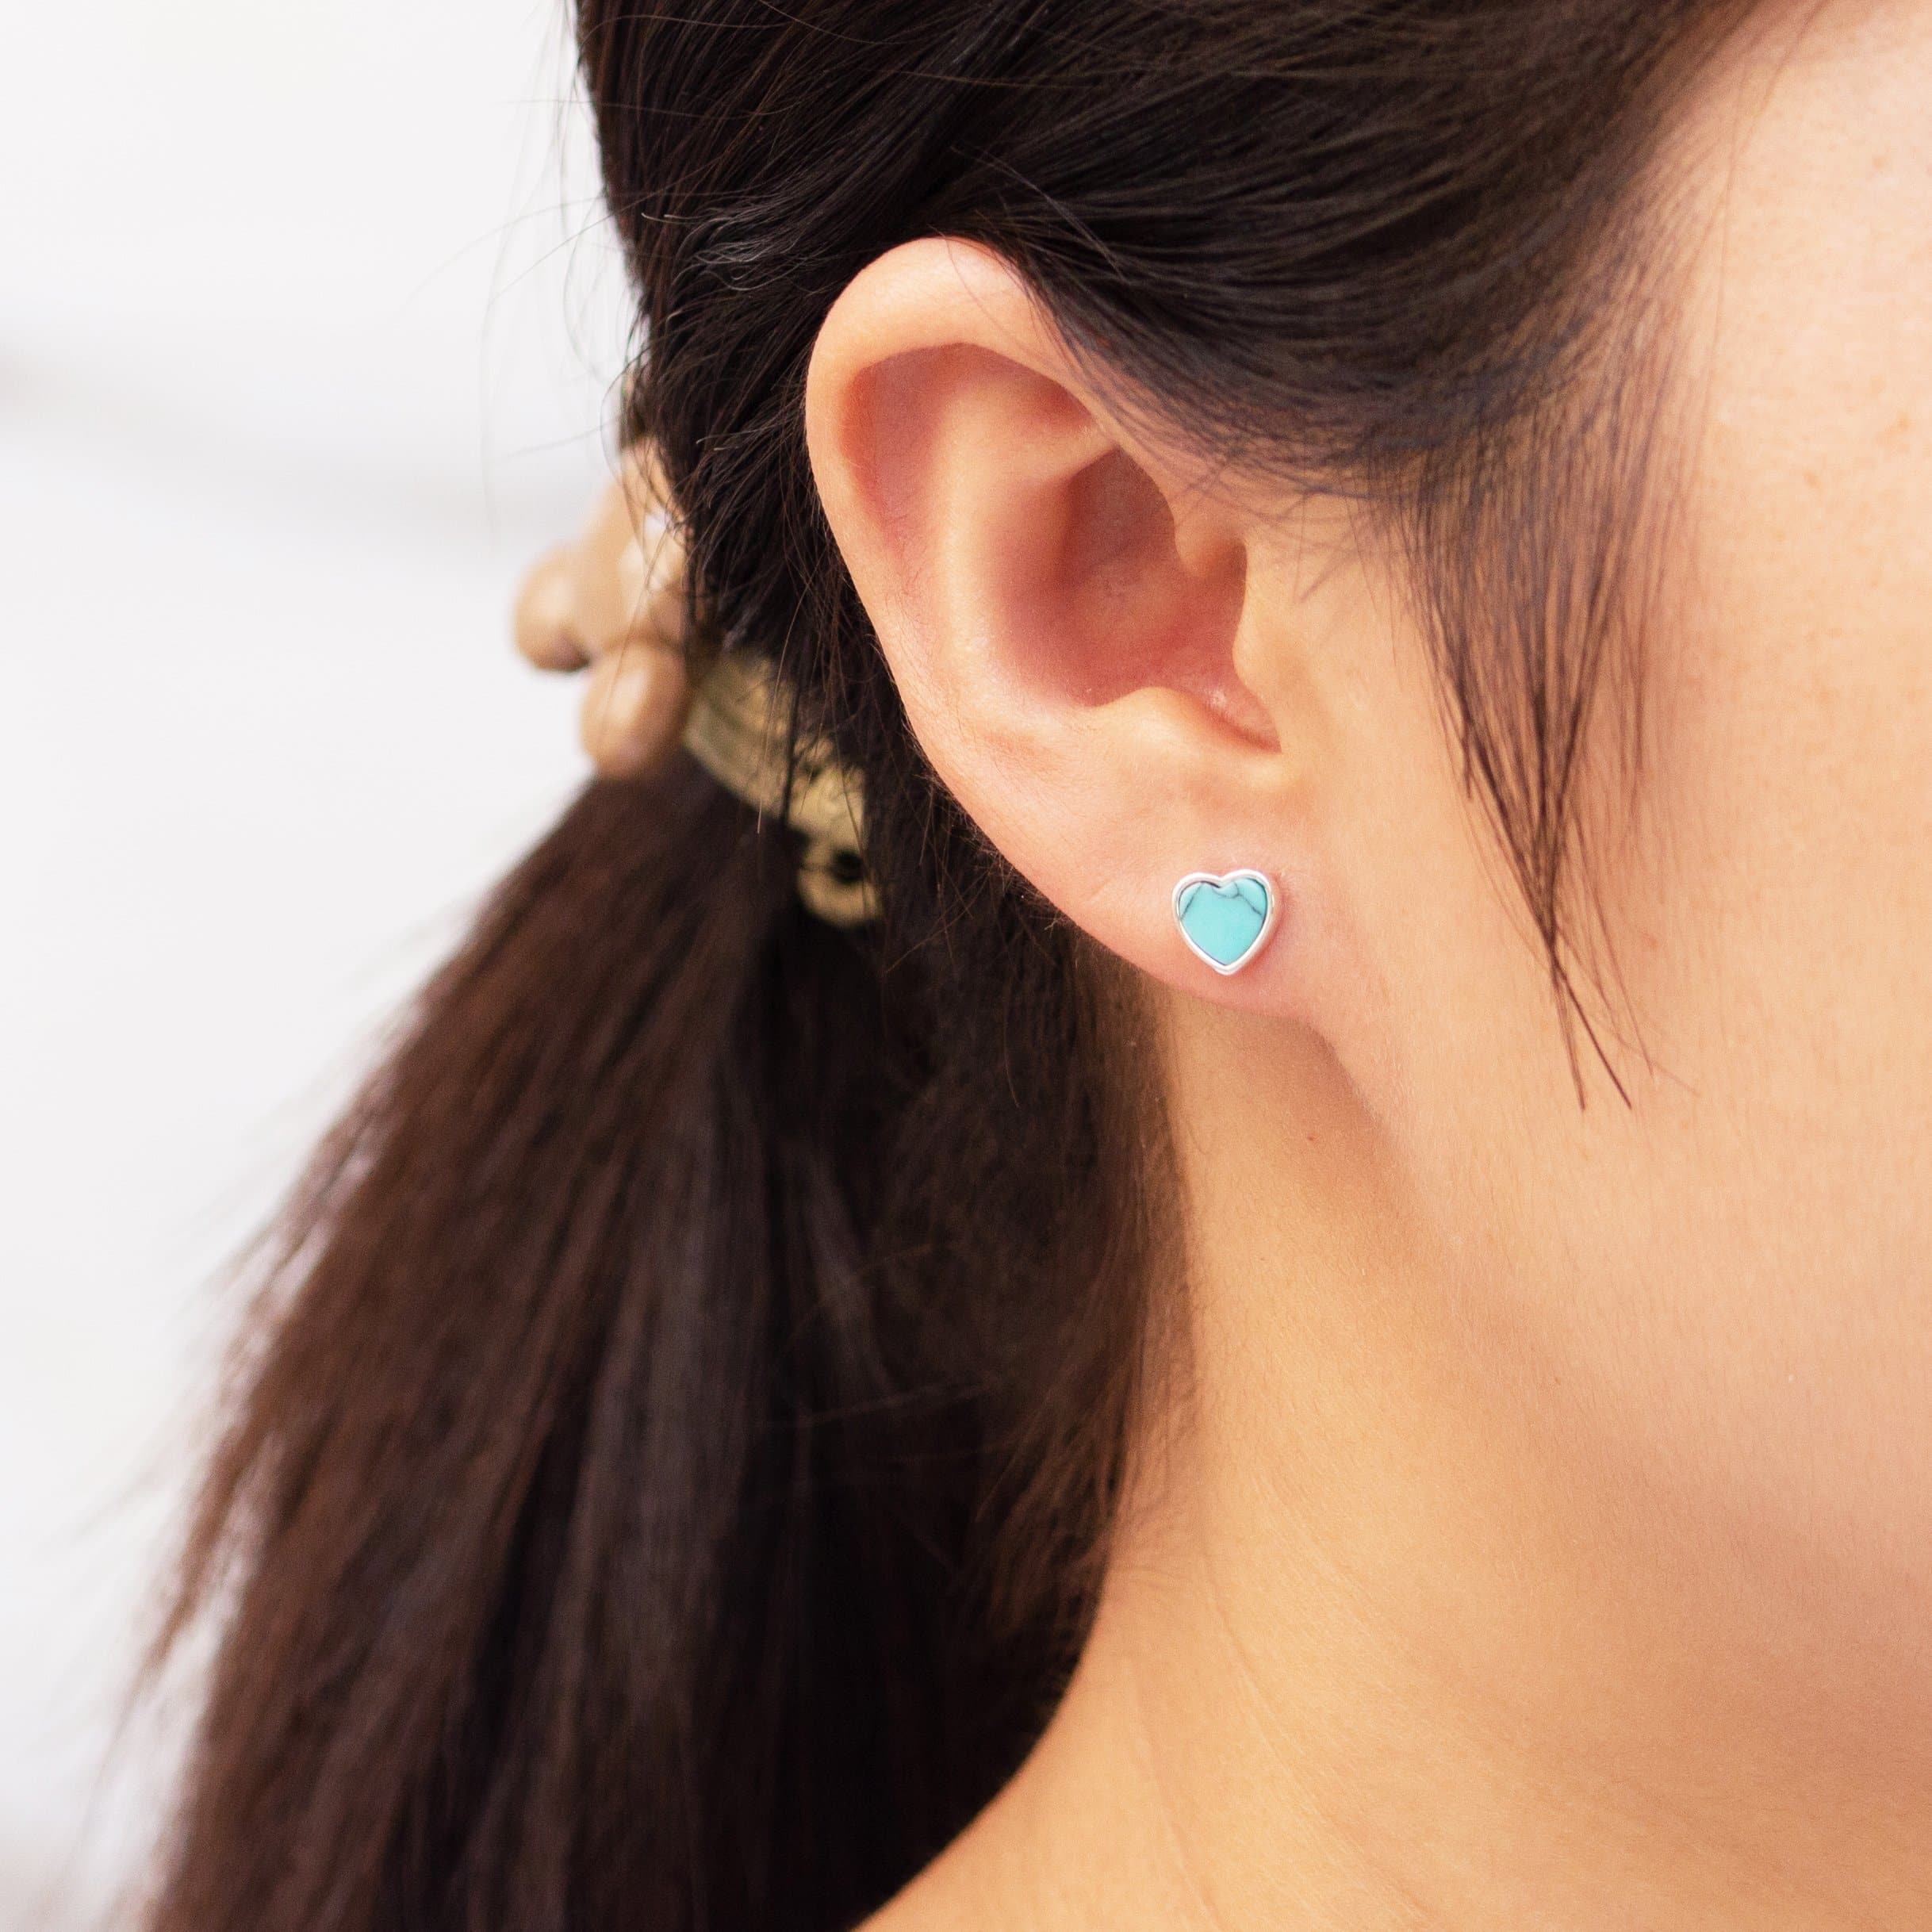 Synthetic Turquoise Heart Stud Earrings